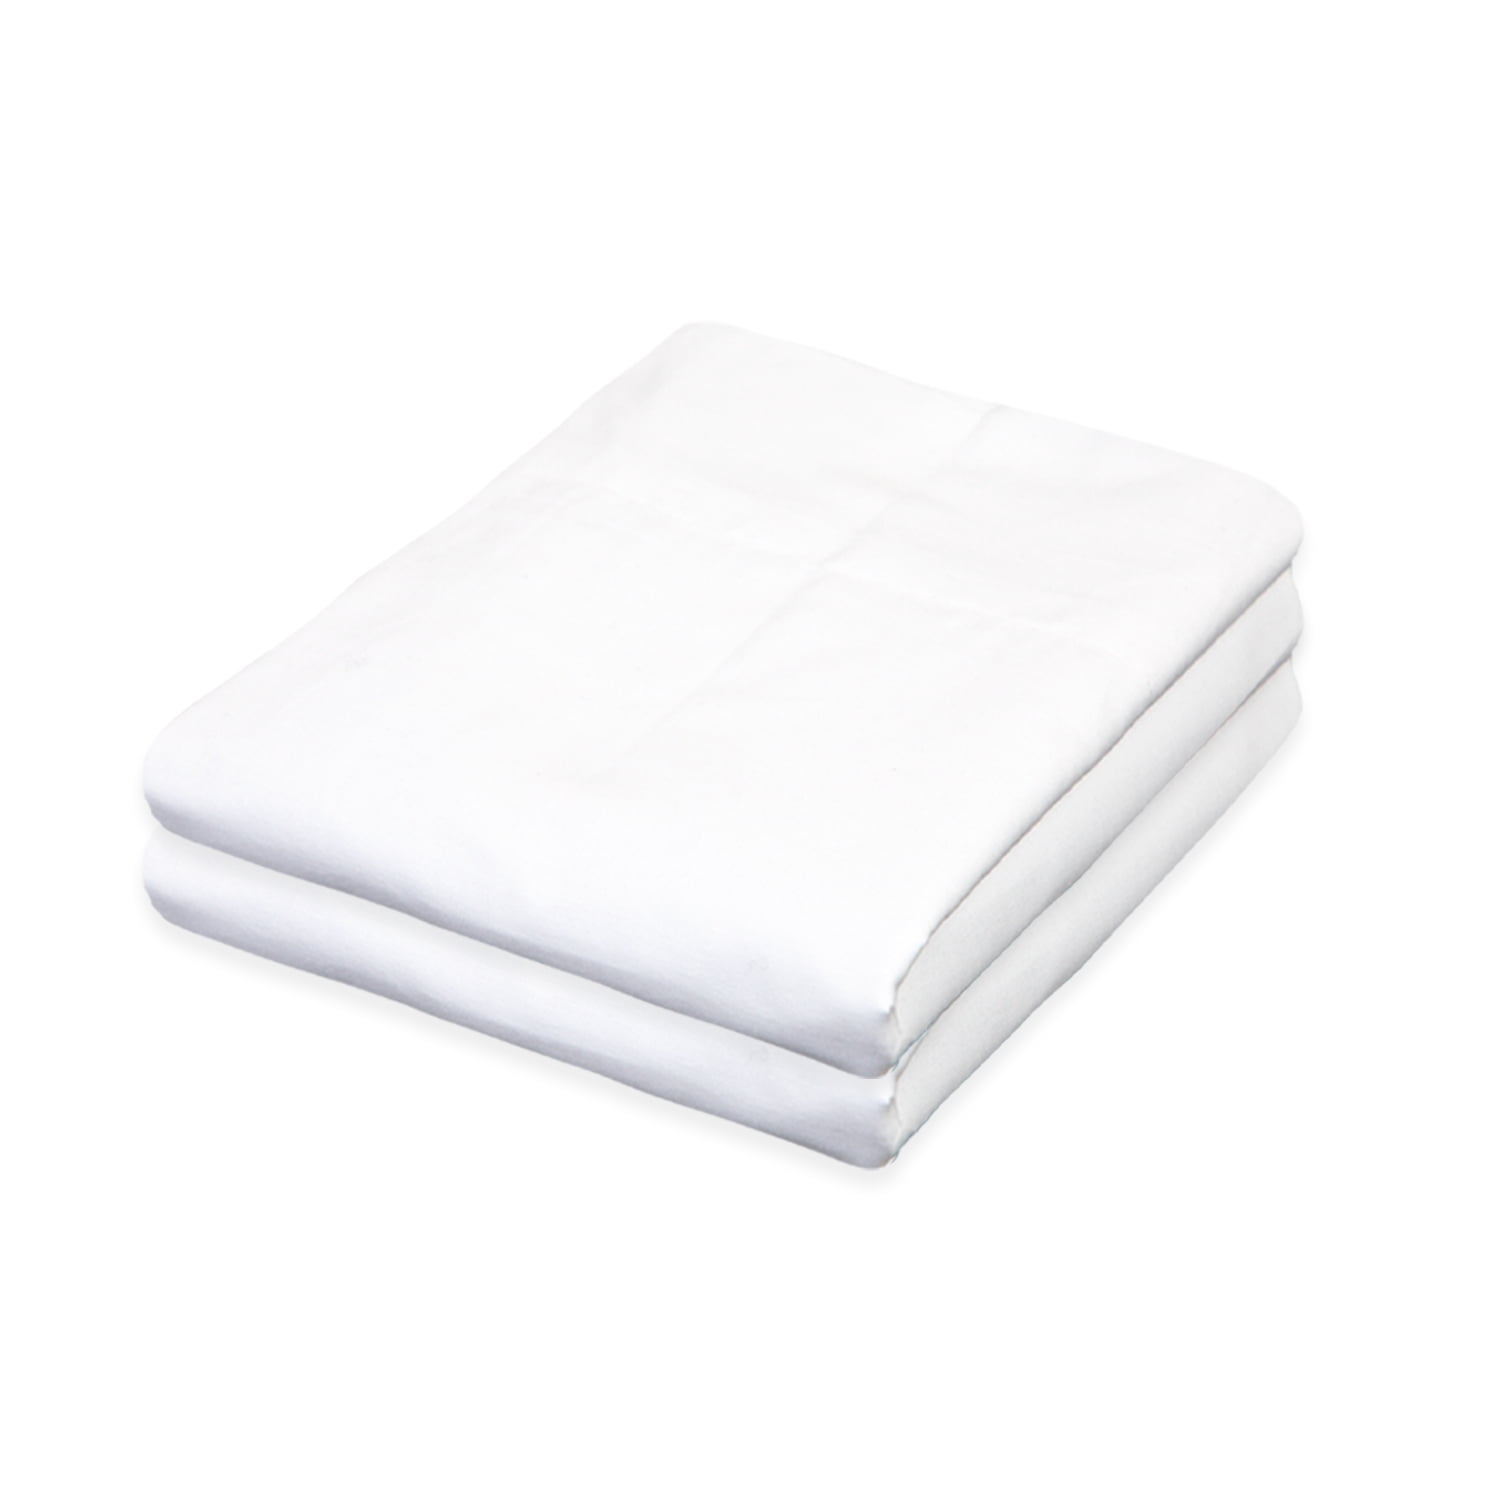 24 new white king size hotel pillowcases 20x40 t180 threadcount 100% cotton 